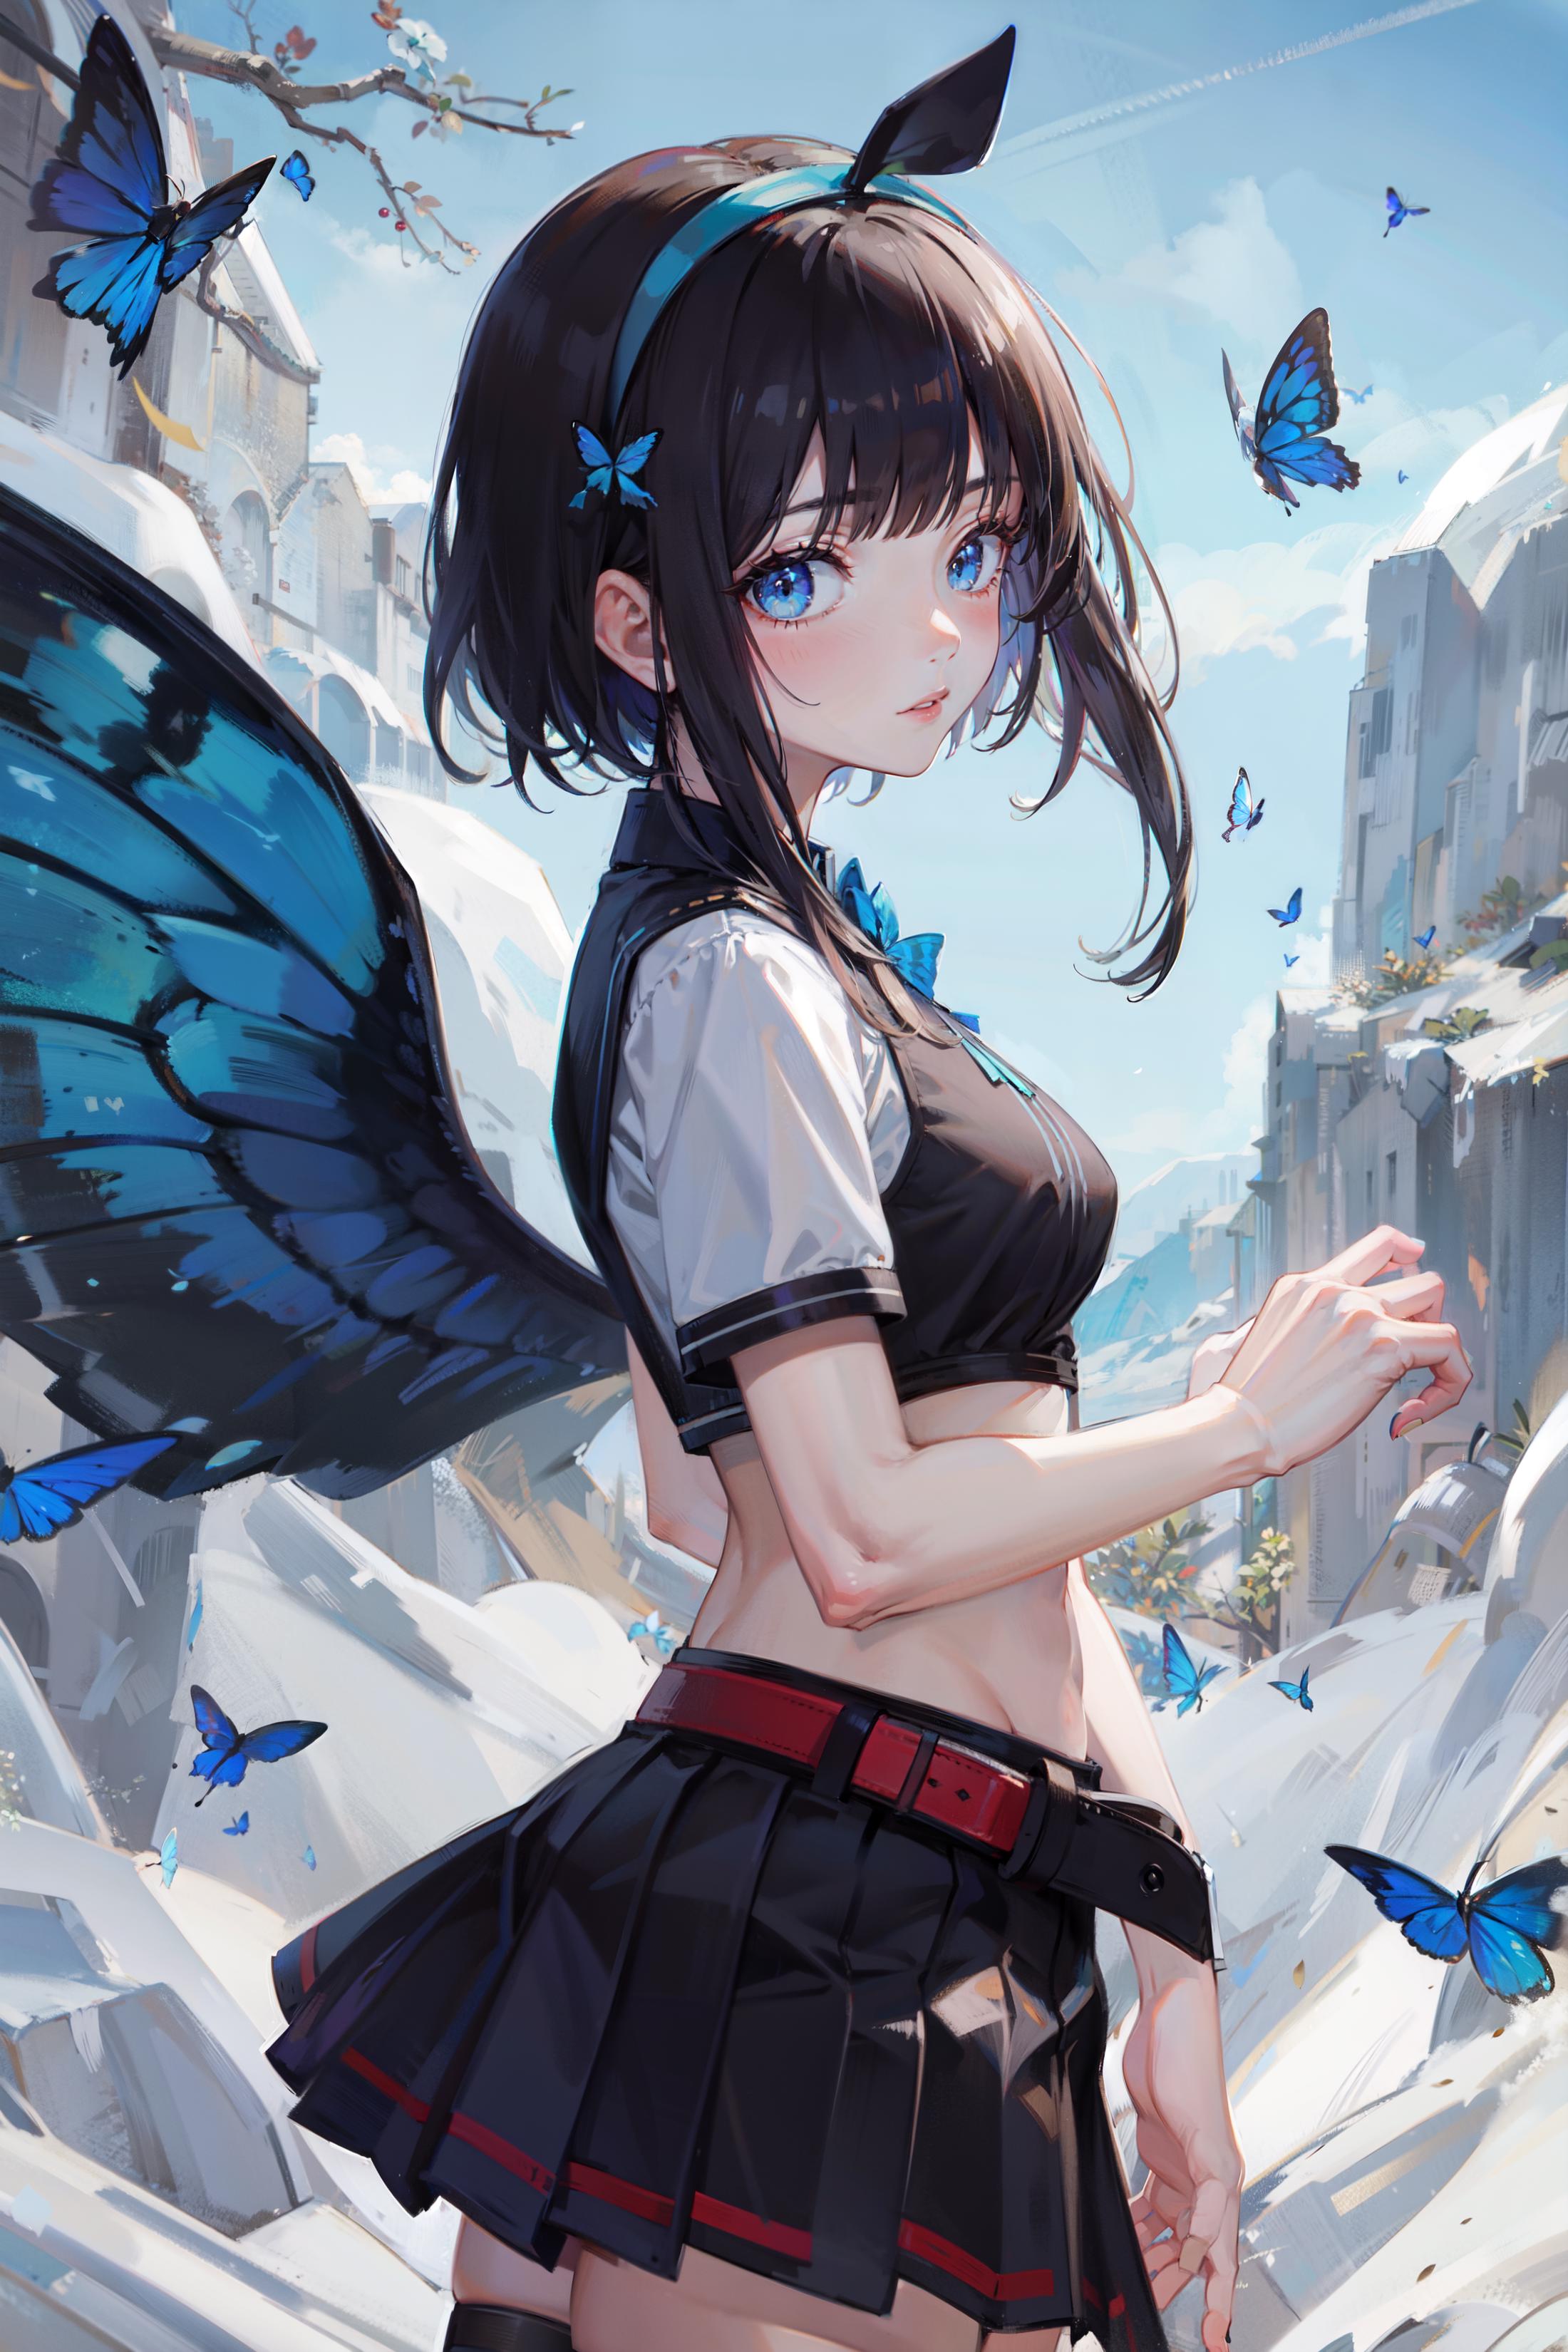 Butterfly Wings - LoHa image by Ninja_Lone